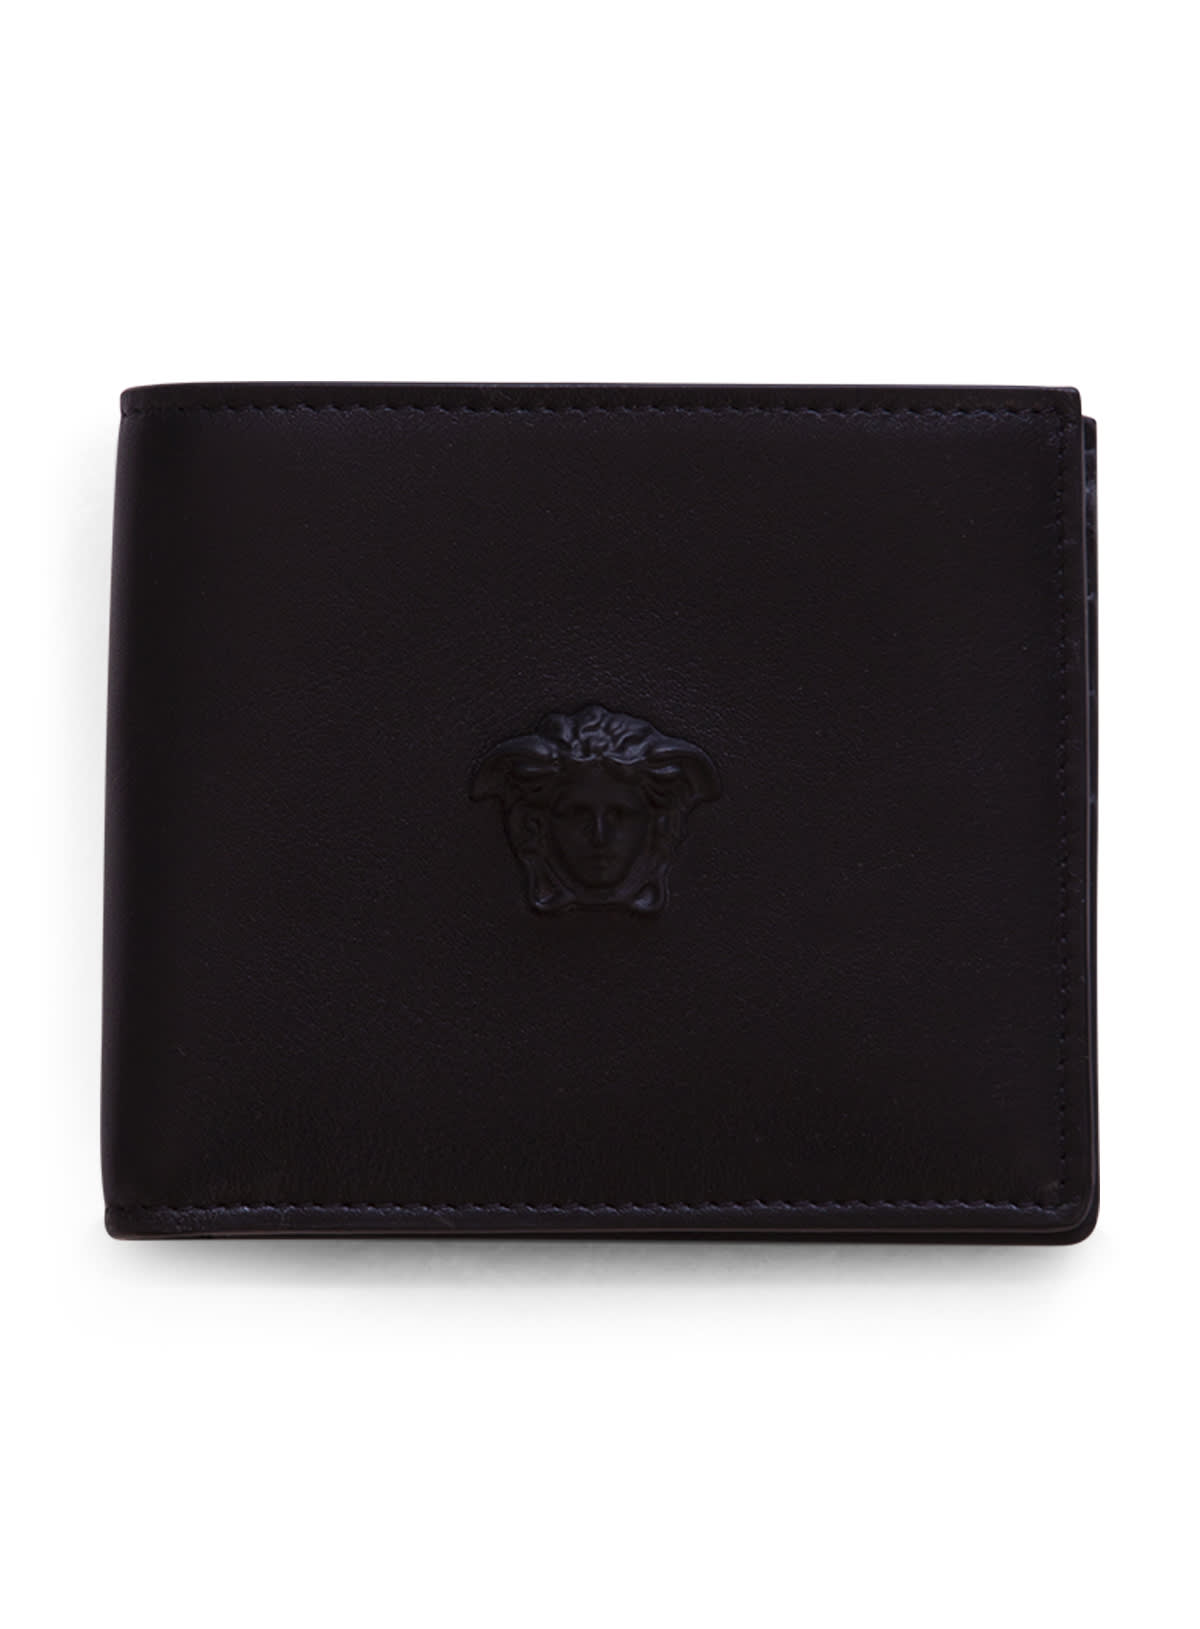 Versace Medusa 3d Wallet